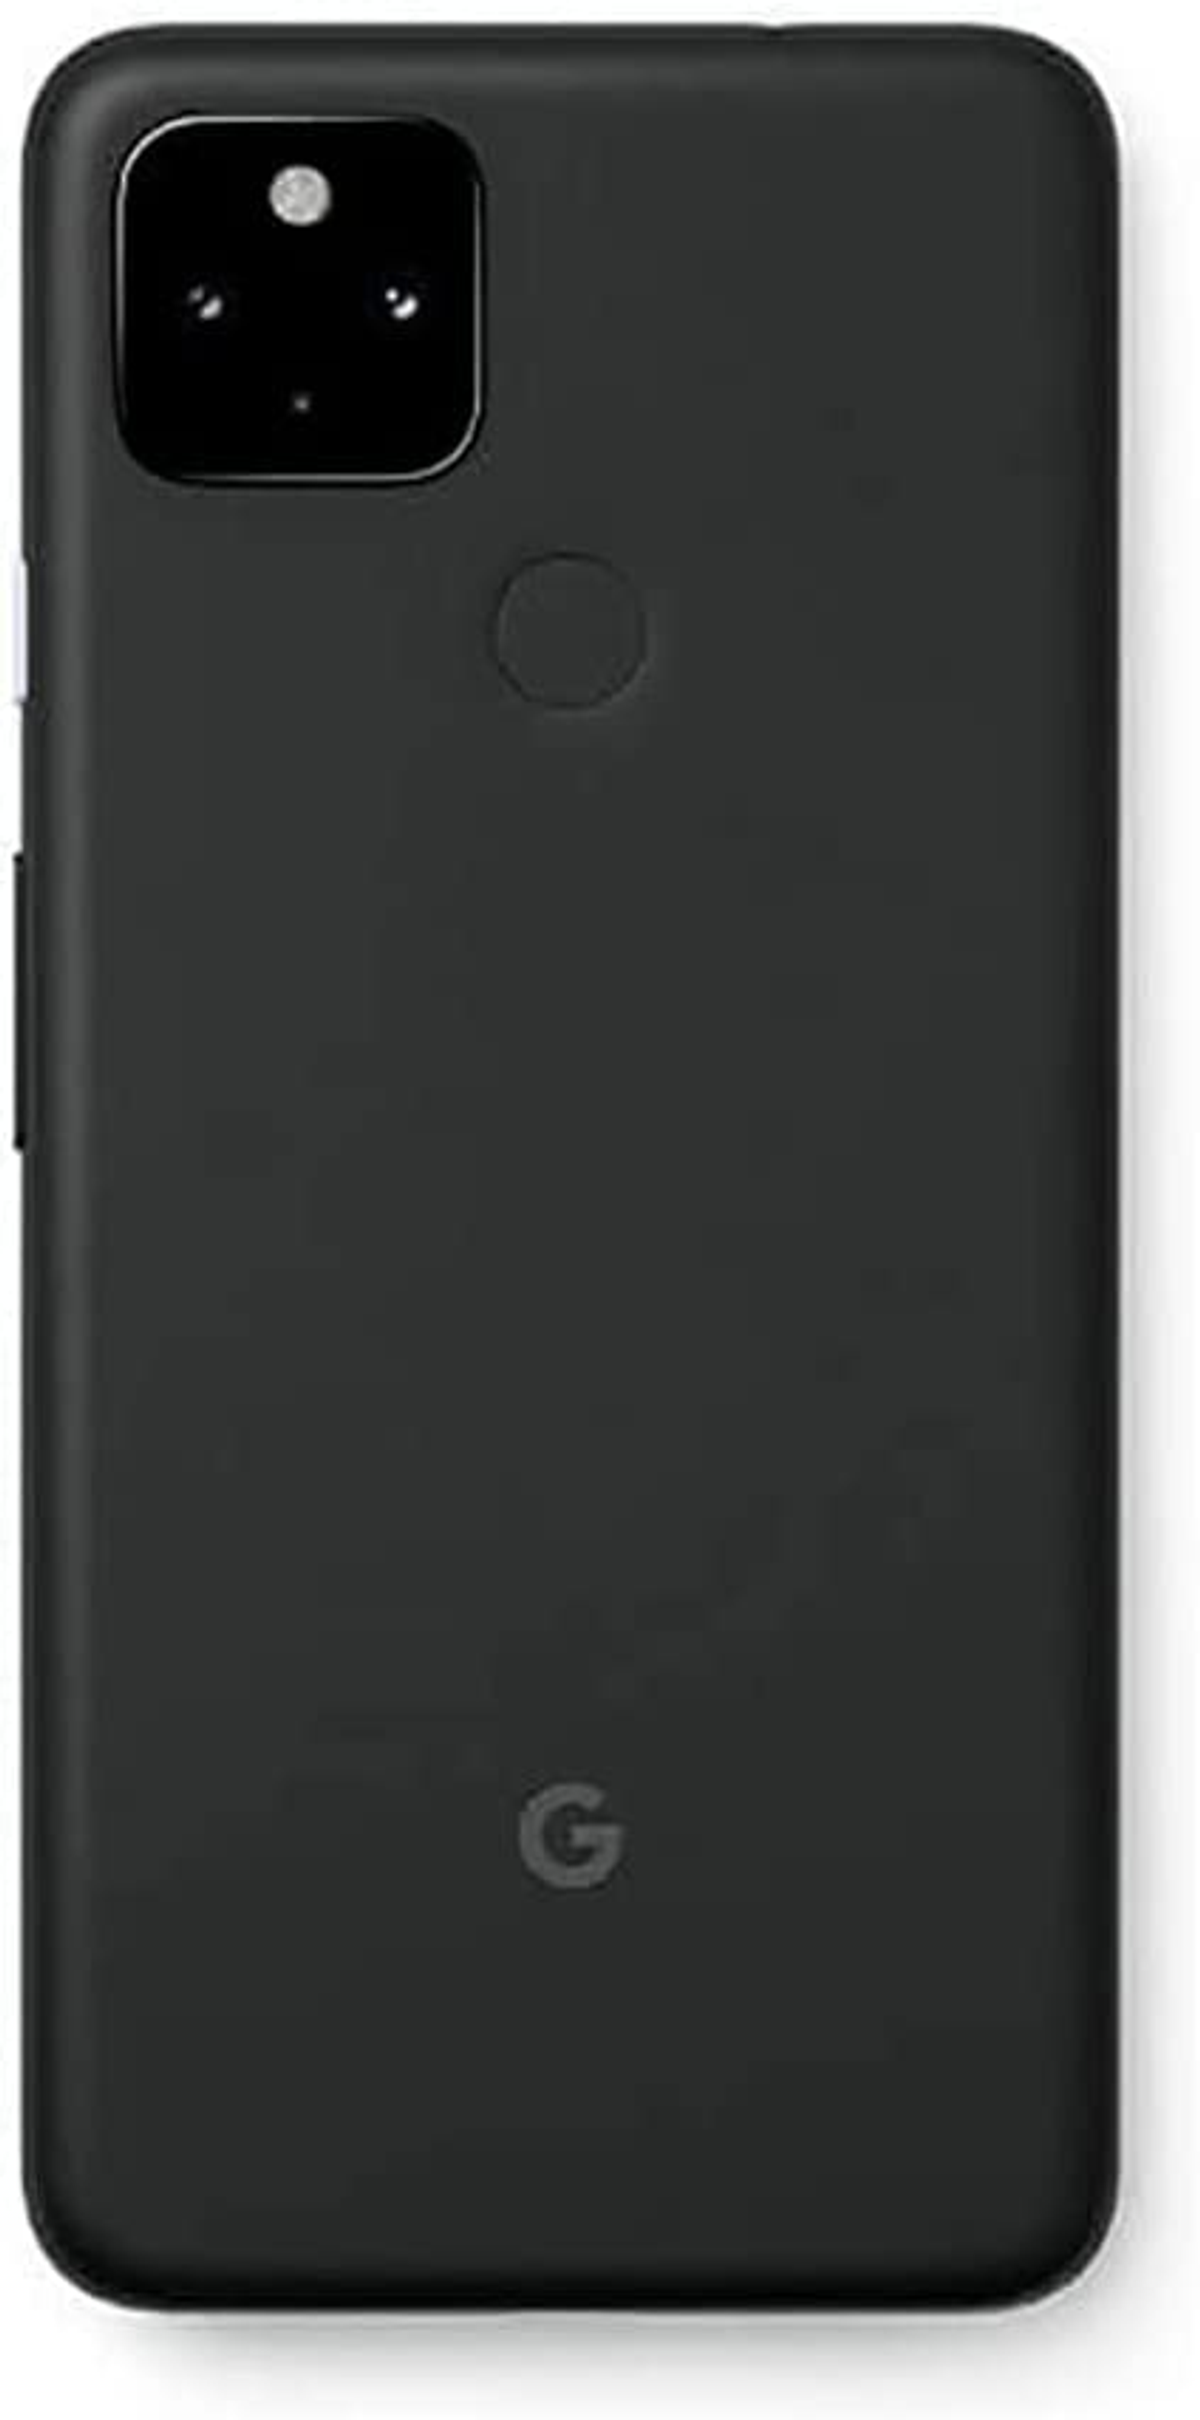 GOOGLE PIXEL 128 4A BLACK Black 5G Just Dual SIM GB